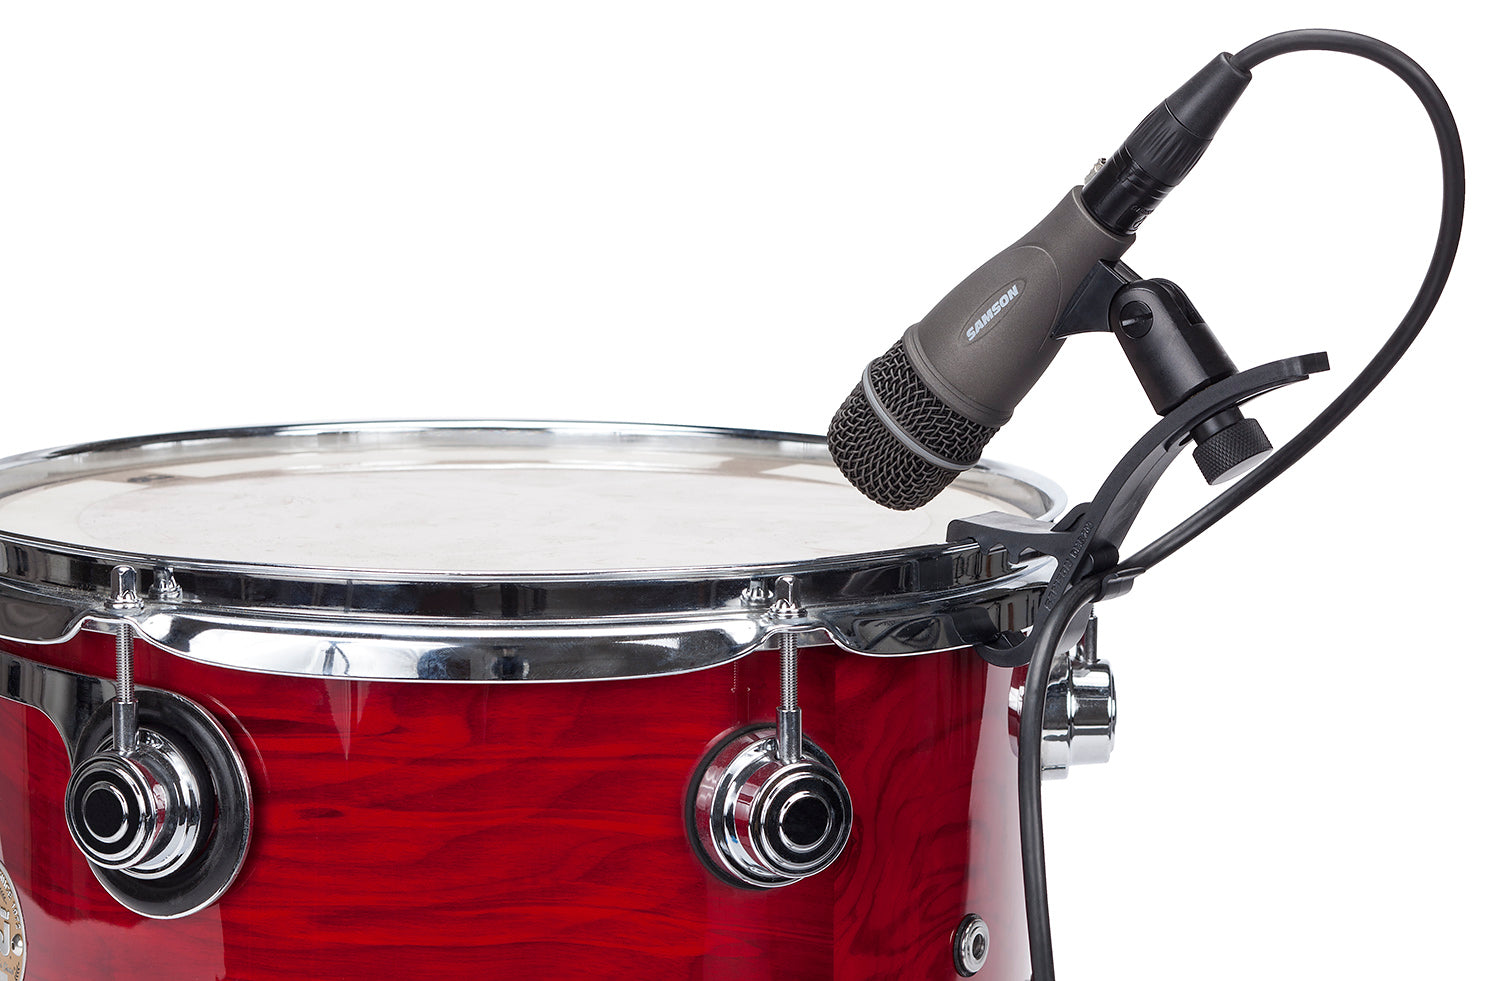 Samson DK705 5-Piece Drum Microphone Kit with Case